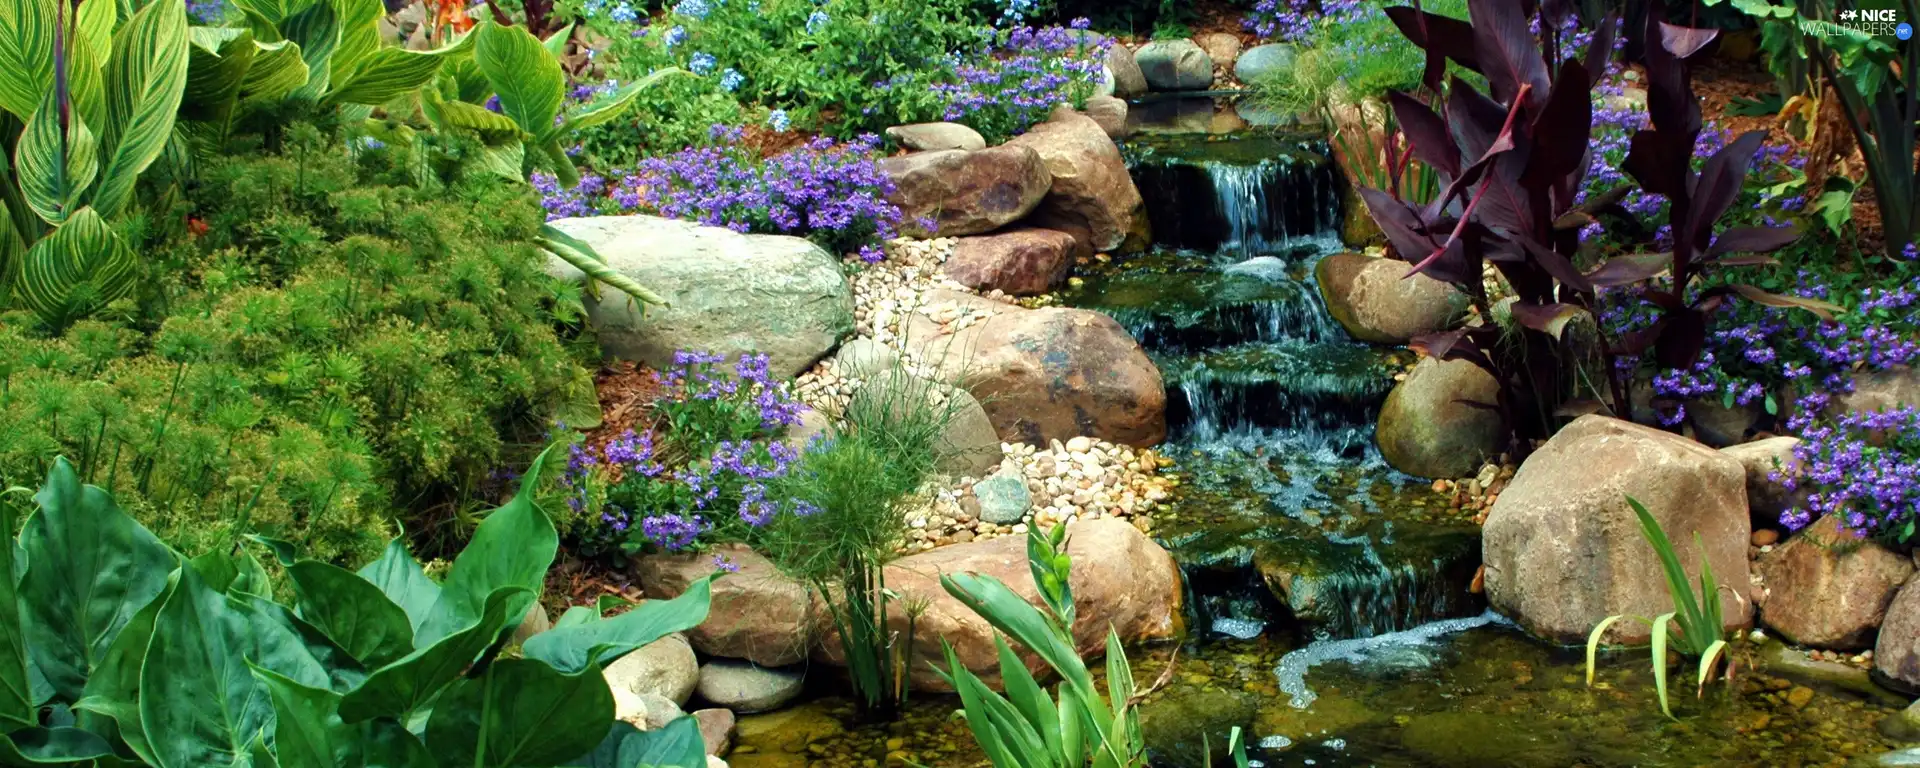 rock, Plants, Stones, stream